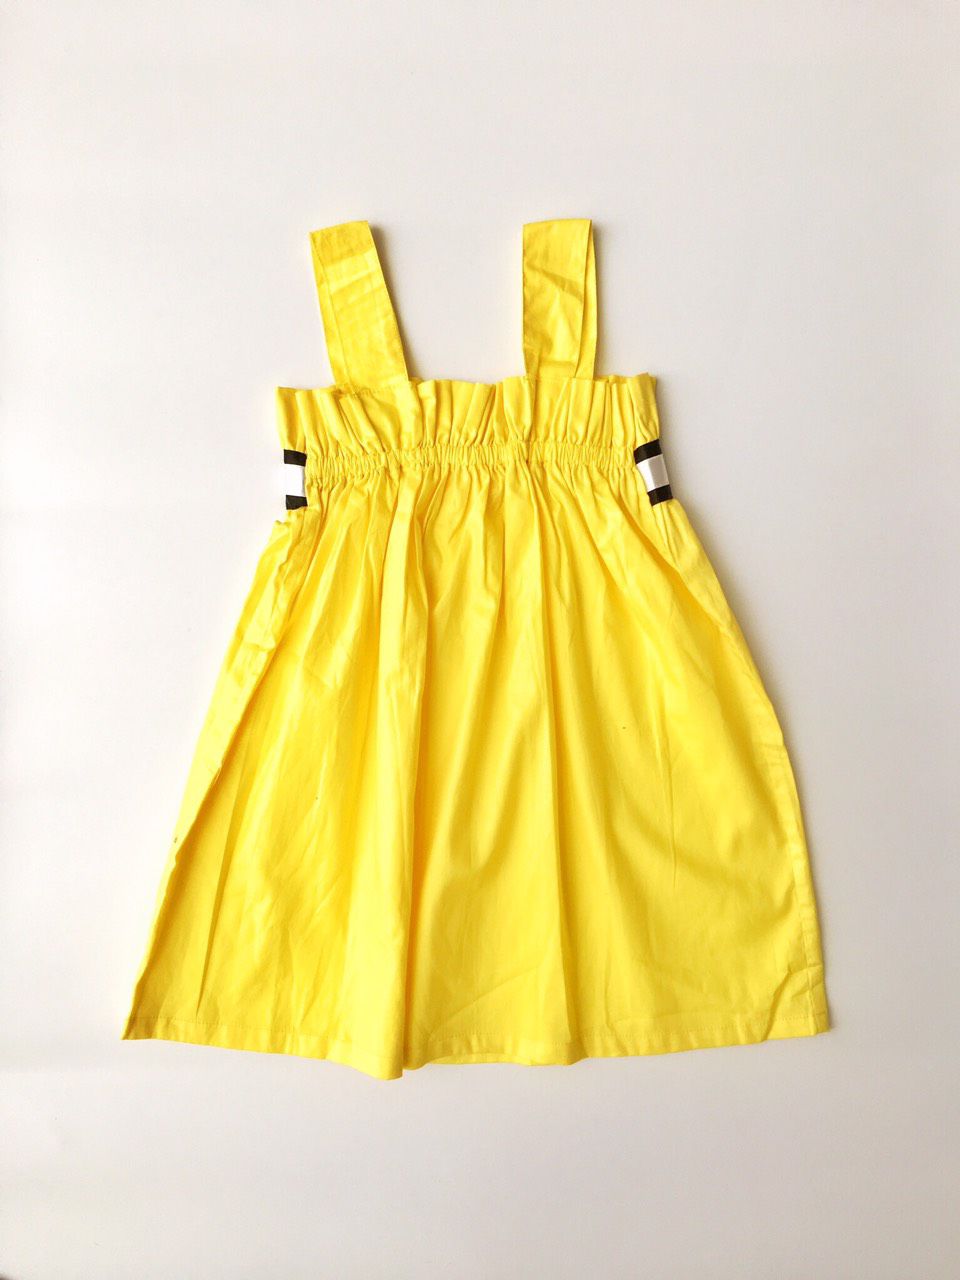 Chân váy màu vàng kết hợp với áo màu gì để chuẩn style | Thắm Đặng | 2023